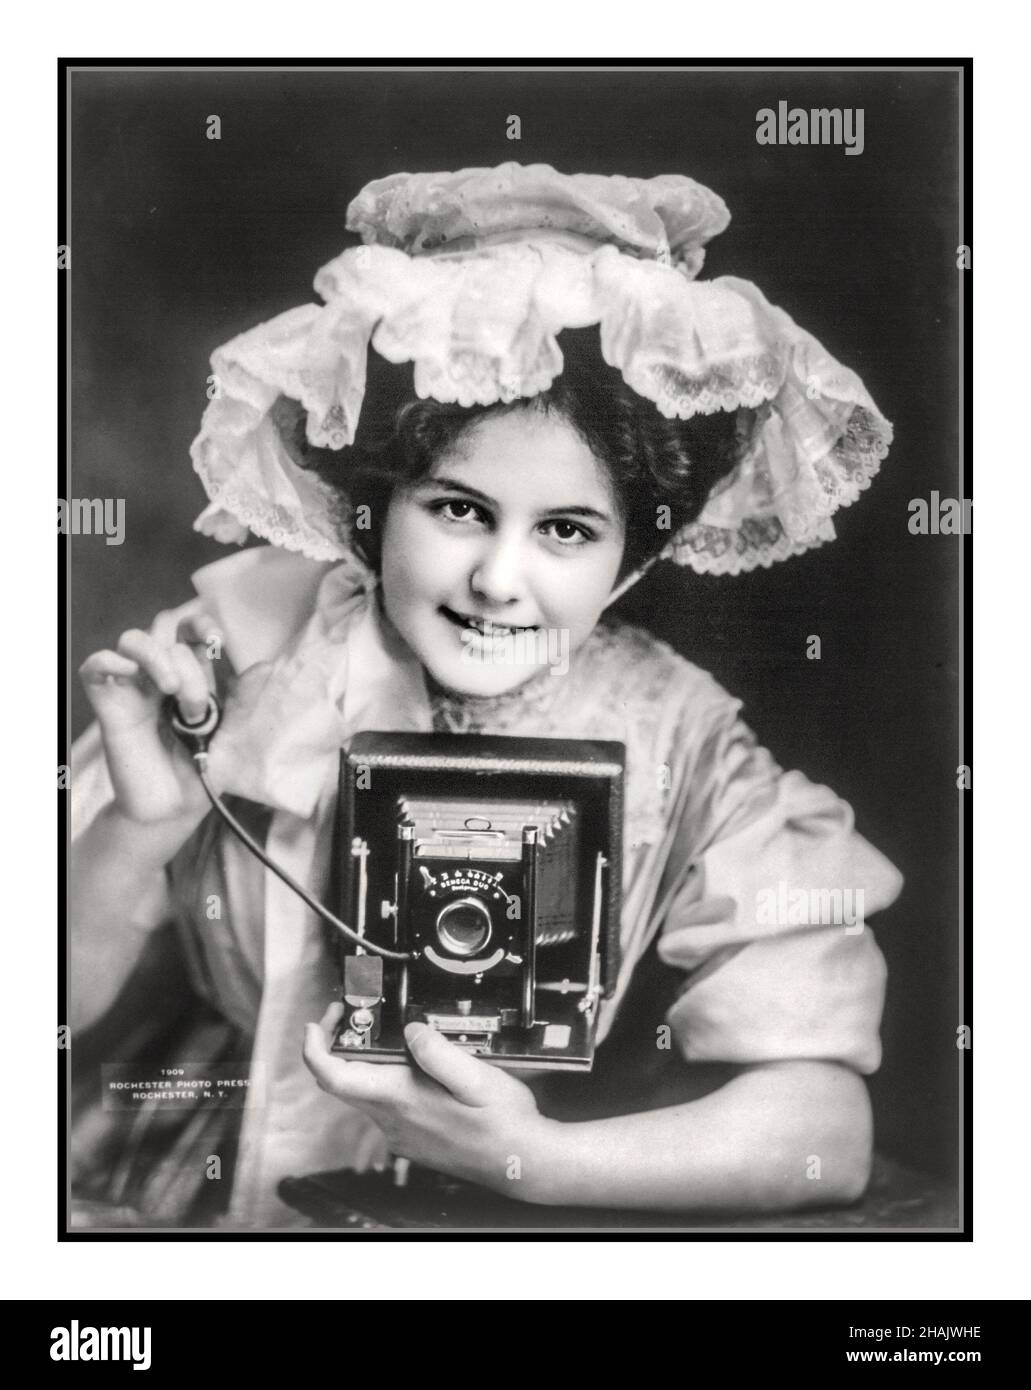 La fotografia pubblicitaria del 1900 mostra la ragazza giovane di 17-22 anni che ha posato con la macchina fotografica del film della piastra del Seneca Duo e che rilascia l'otturatore della lampadina dell'aria. Fotografato da Rochester Photo Press, c1909. - Photographic Apparatus & Supplies--1900-1910 - Cameras--1900-1910 - Advertises--1900-1910 - Young adults--1900-1909 Photographic prints--1900-1910. 1909 di Rochester Photo Press, Rochester, N. Y. USA Foto Stock